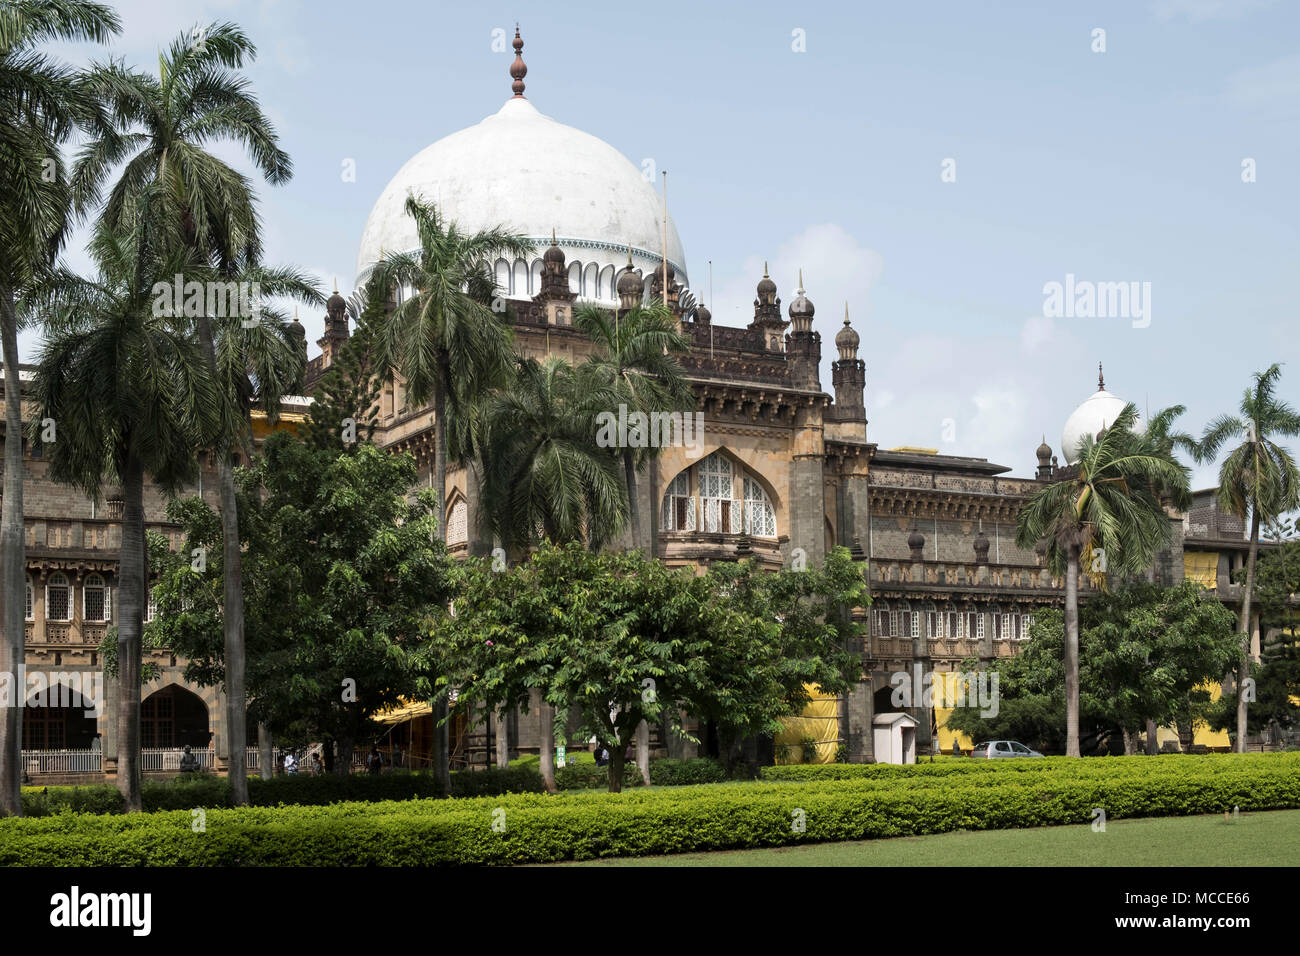 Le musée de Mumbai (Chhatrapati Shivaji Maharaj Vastu Sangrahalaya), anciennement connu sous le nom de Musée du Prince de Galles de l'Inde occidentale, par George Wittet Banque D'Images